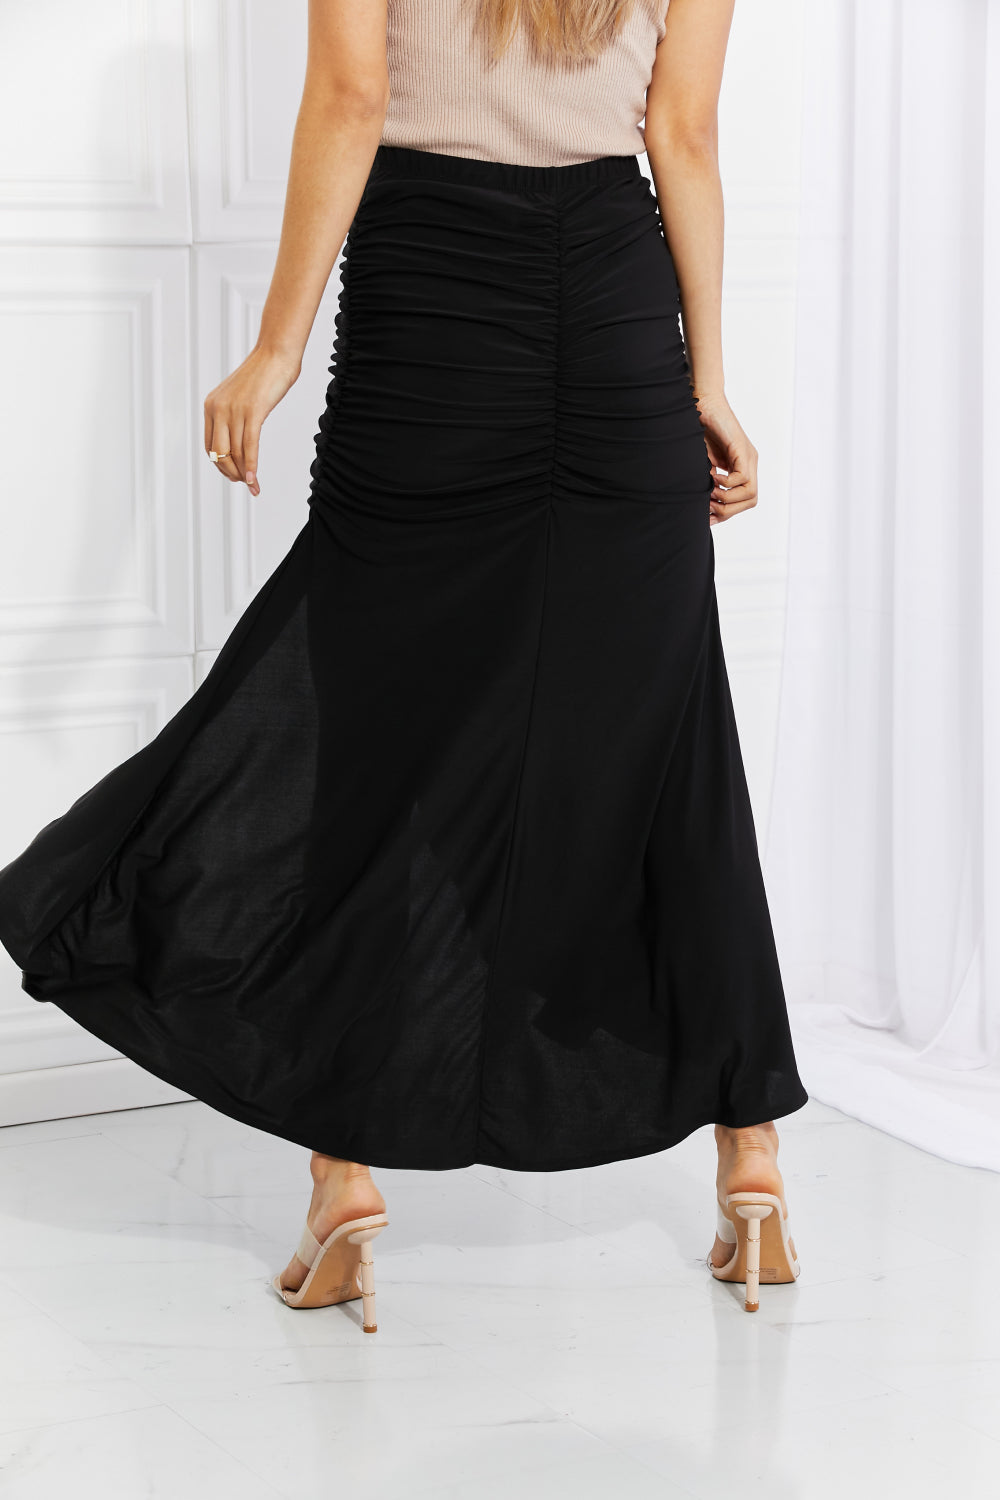 Versatile Full Size Black Maxi Skirt